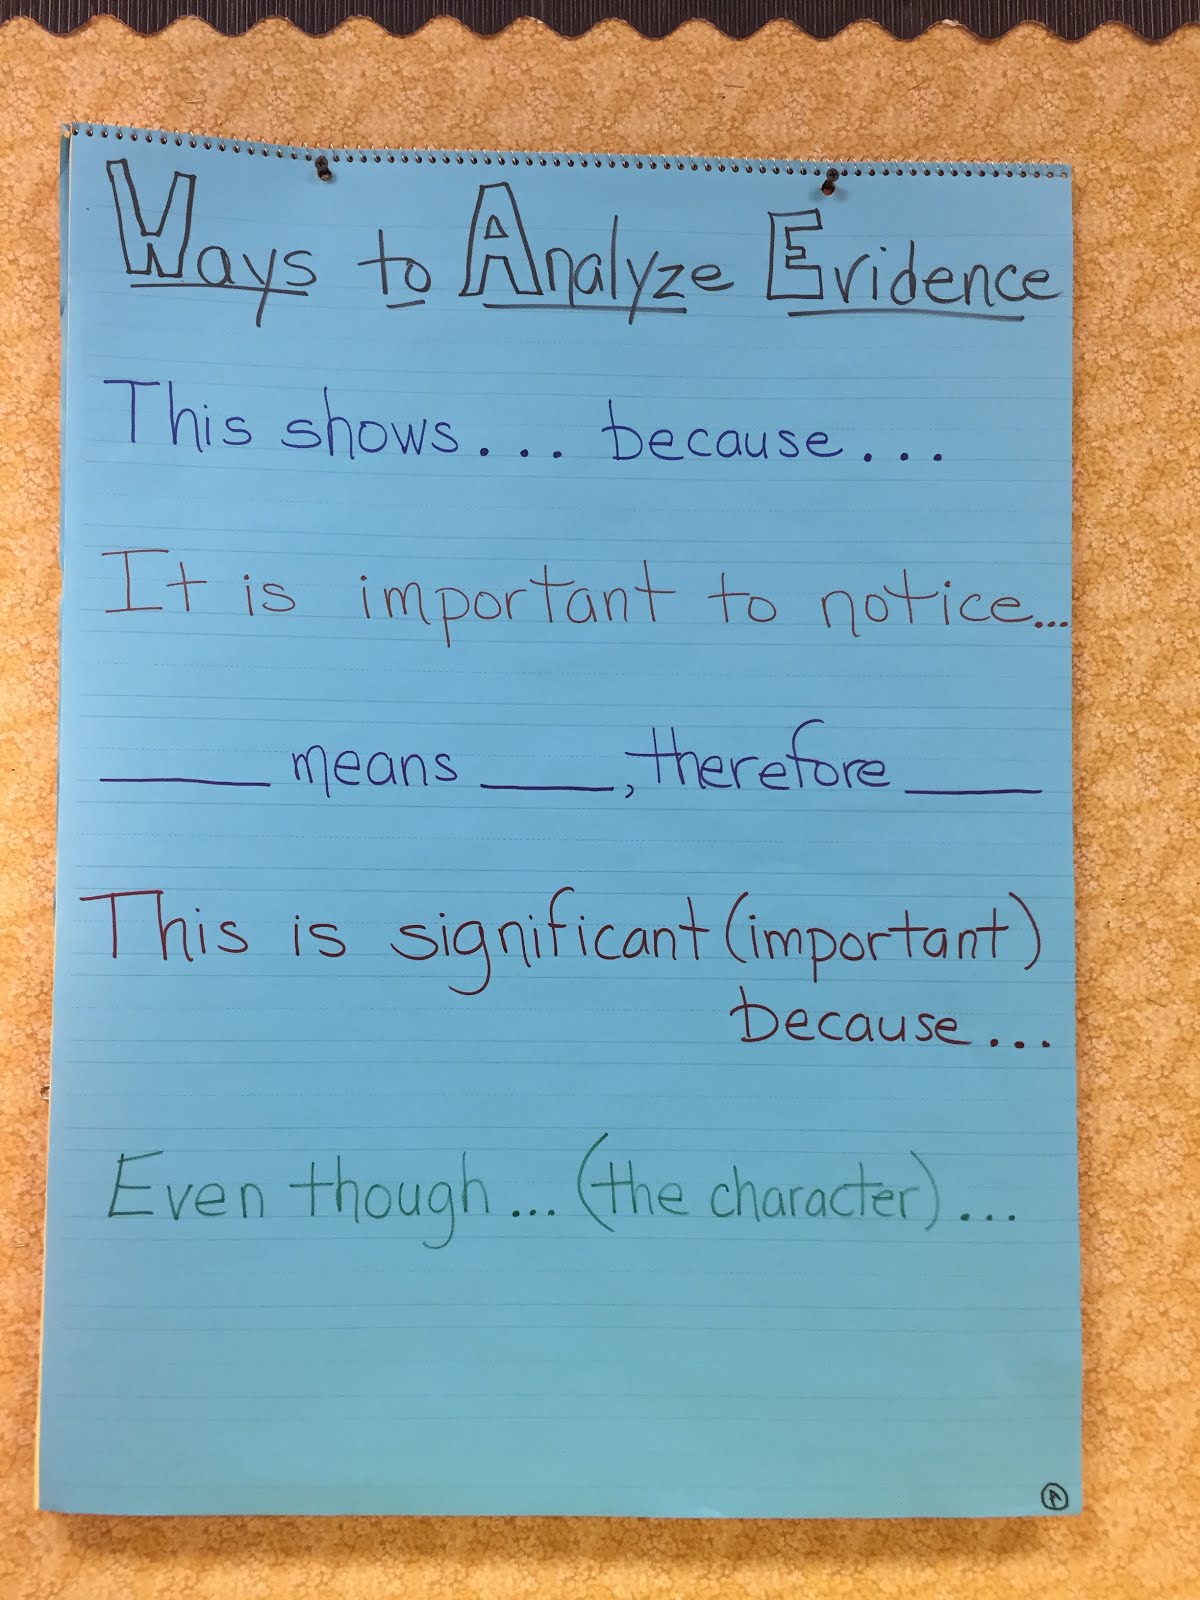 Ways to Analyze Evidence